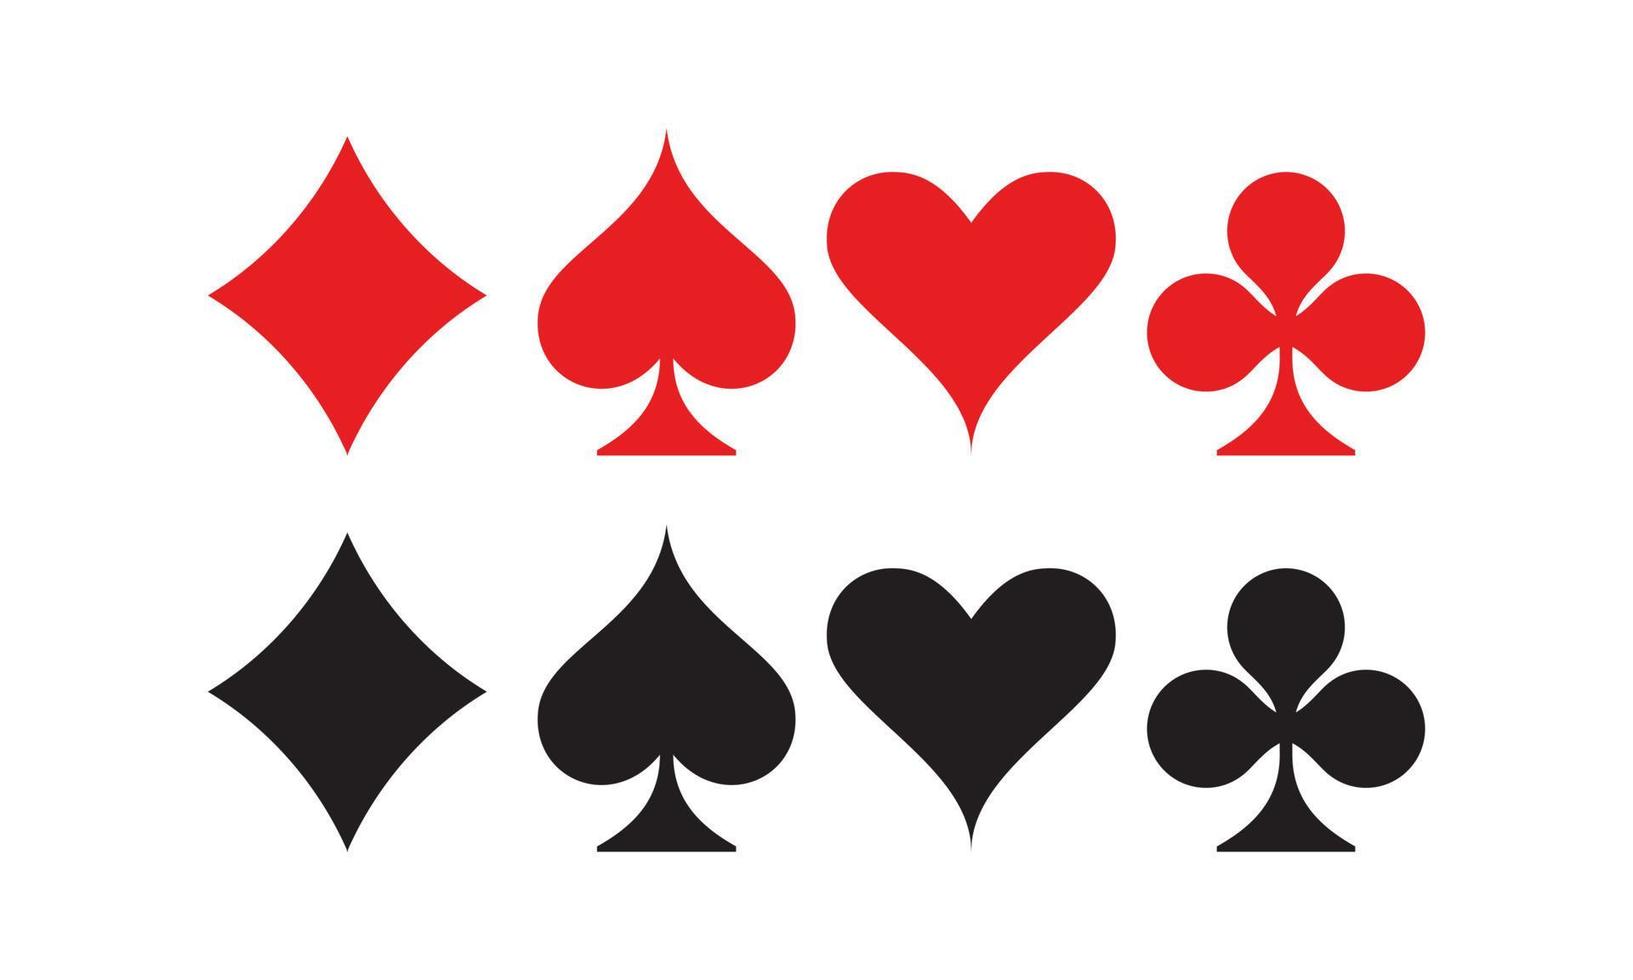 Ilustración de vector plano del juego de símbolos de naipes. adecuado para el elemento de diseño del juego de naipes. símbolo del icono de diamante, espada, corazón y club en negro y rojo.